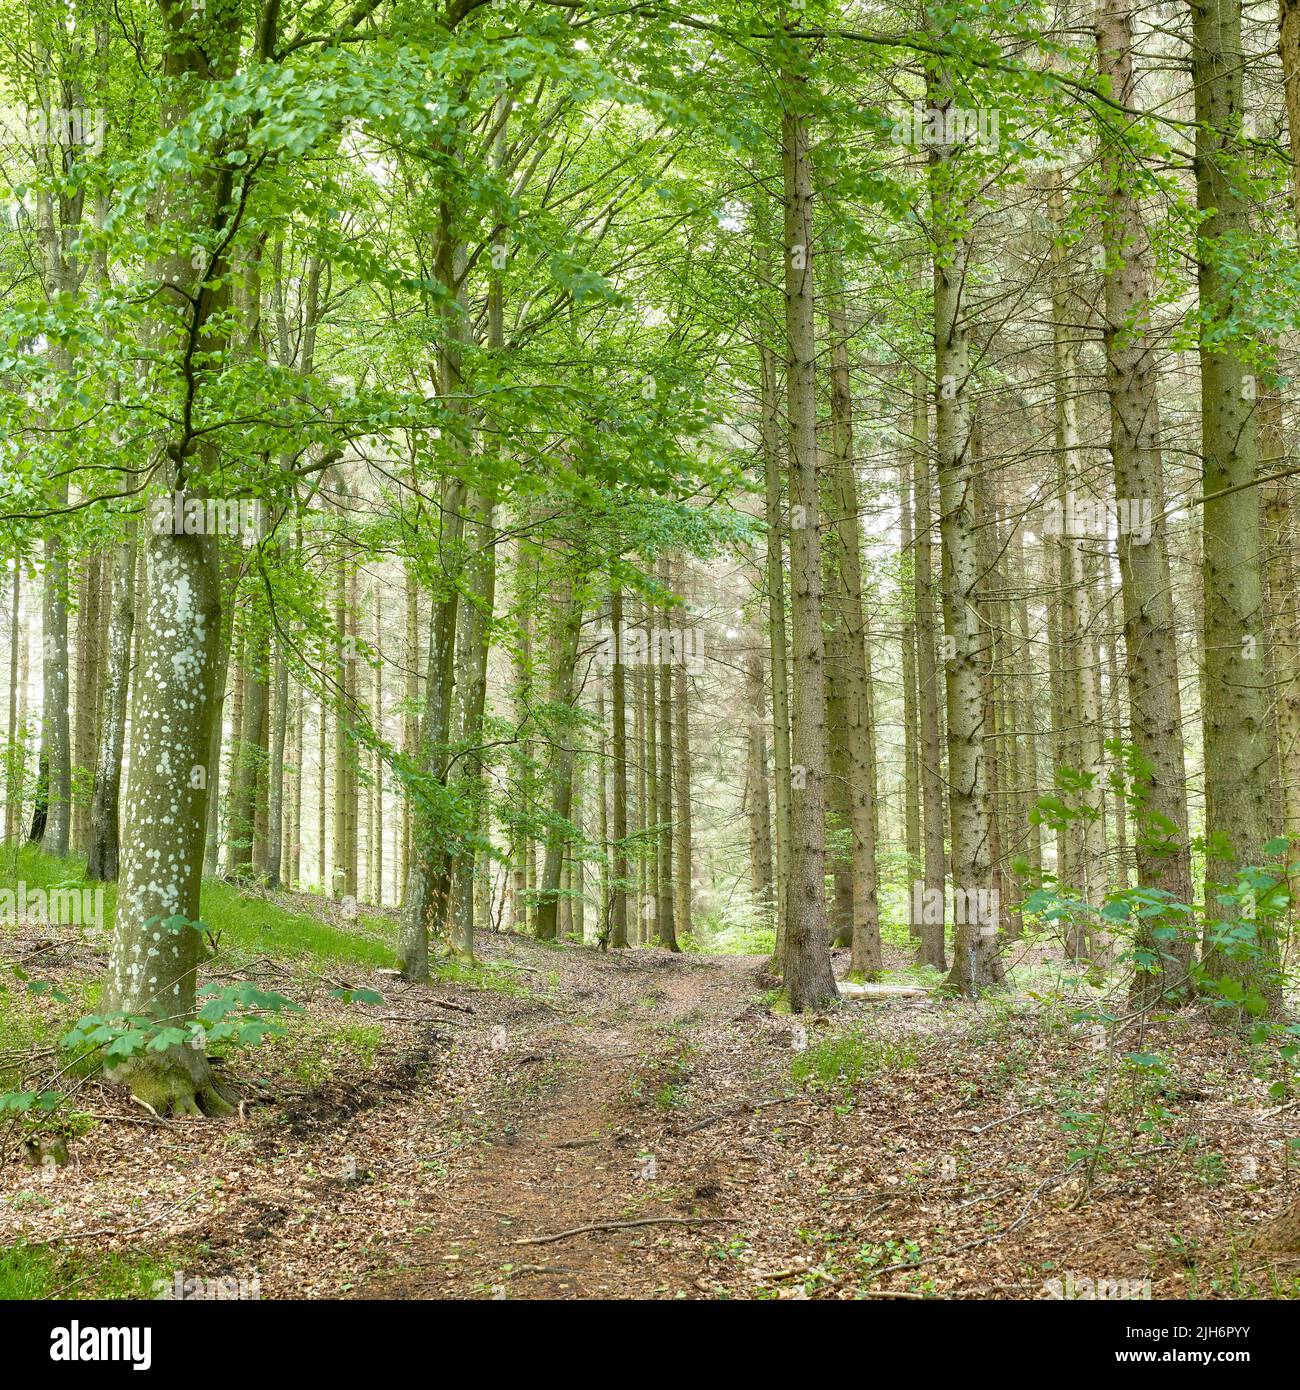 Wilde Birken wachsen in einem Wald mit grünen Pflanzen und Sträuchern. Malerische Landschaft aus hohen Holzstämmen mit üppigen Blättern in der Natur im Frühling Stockfoto